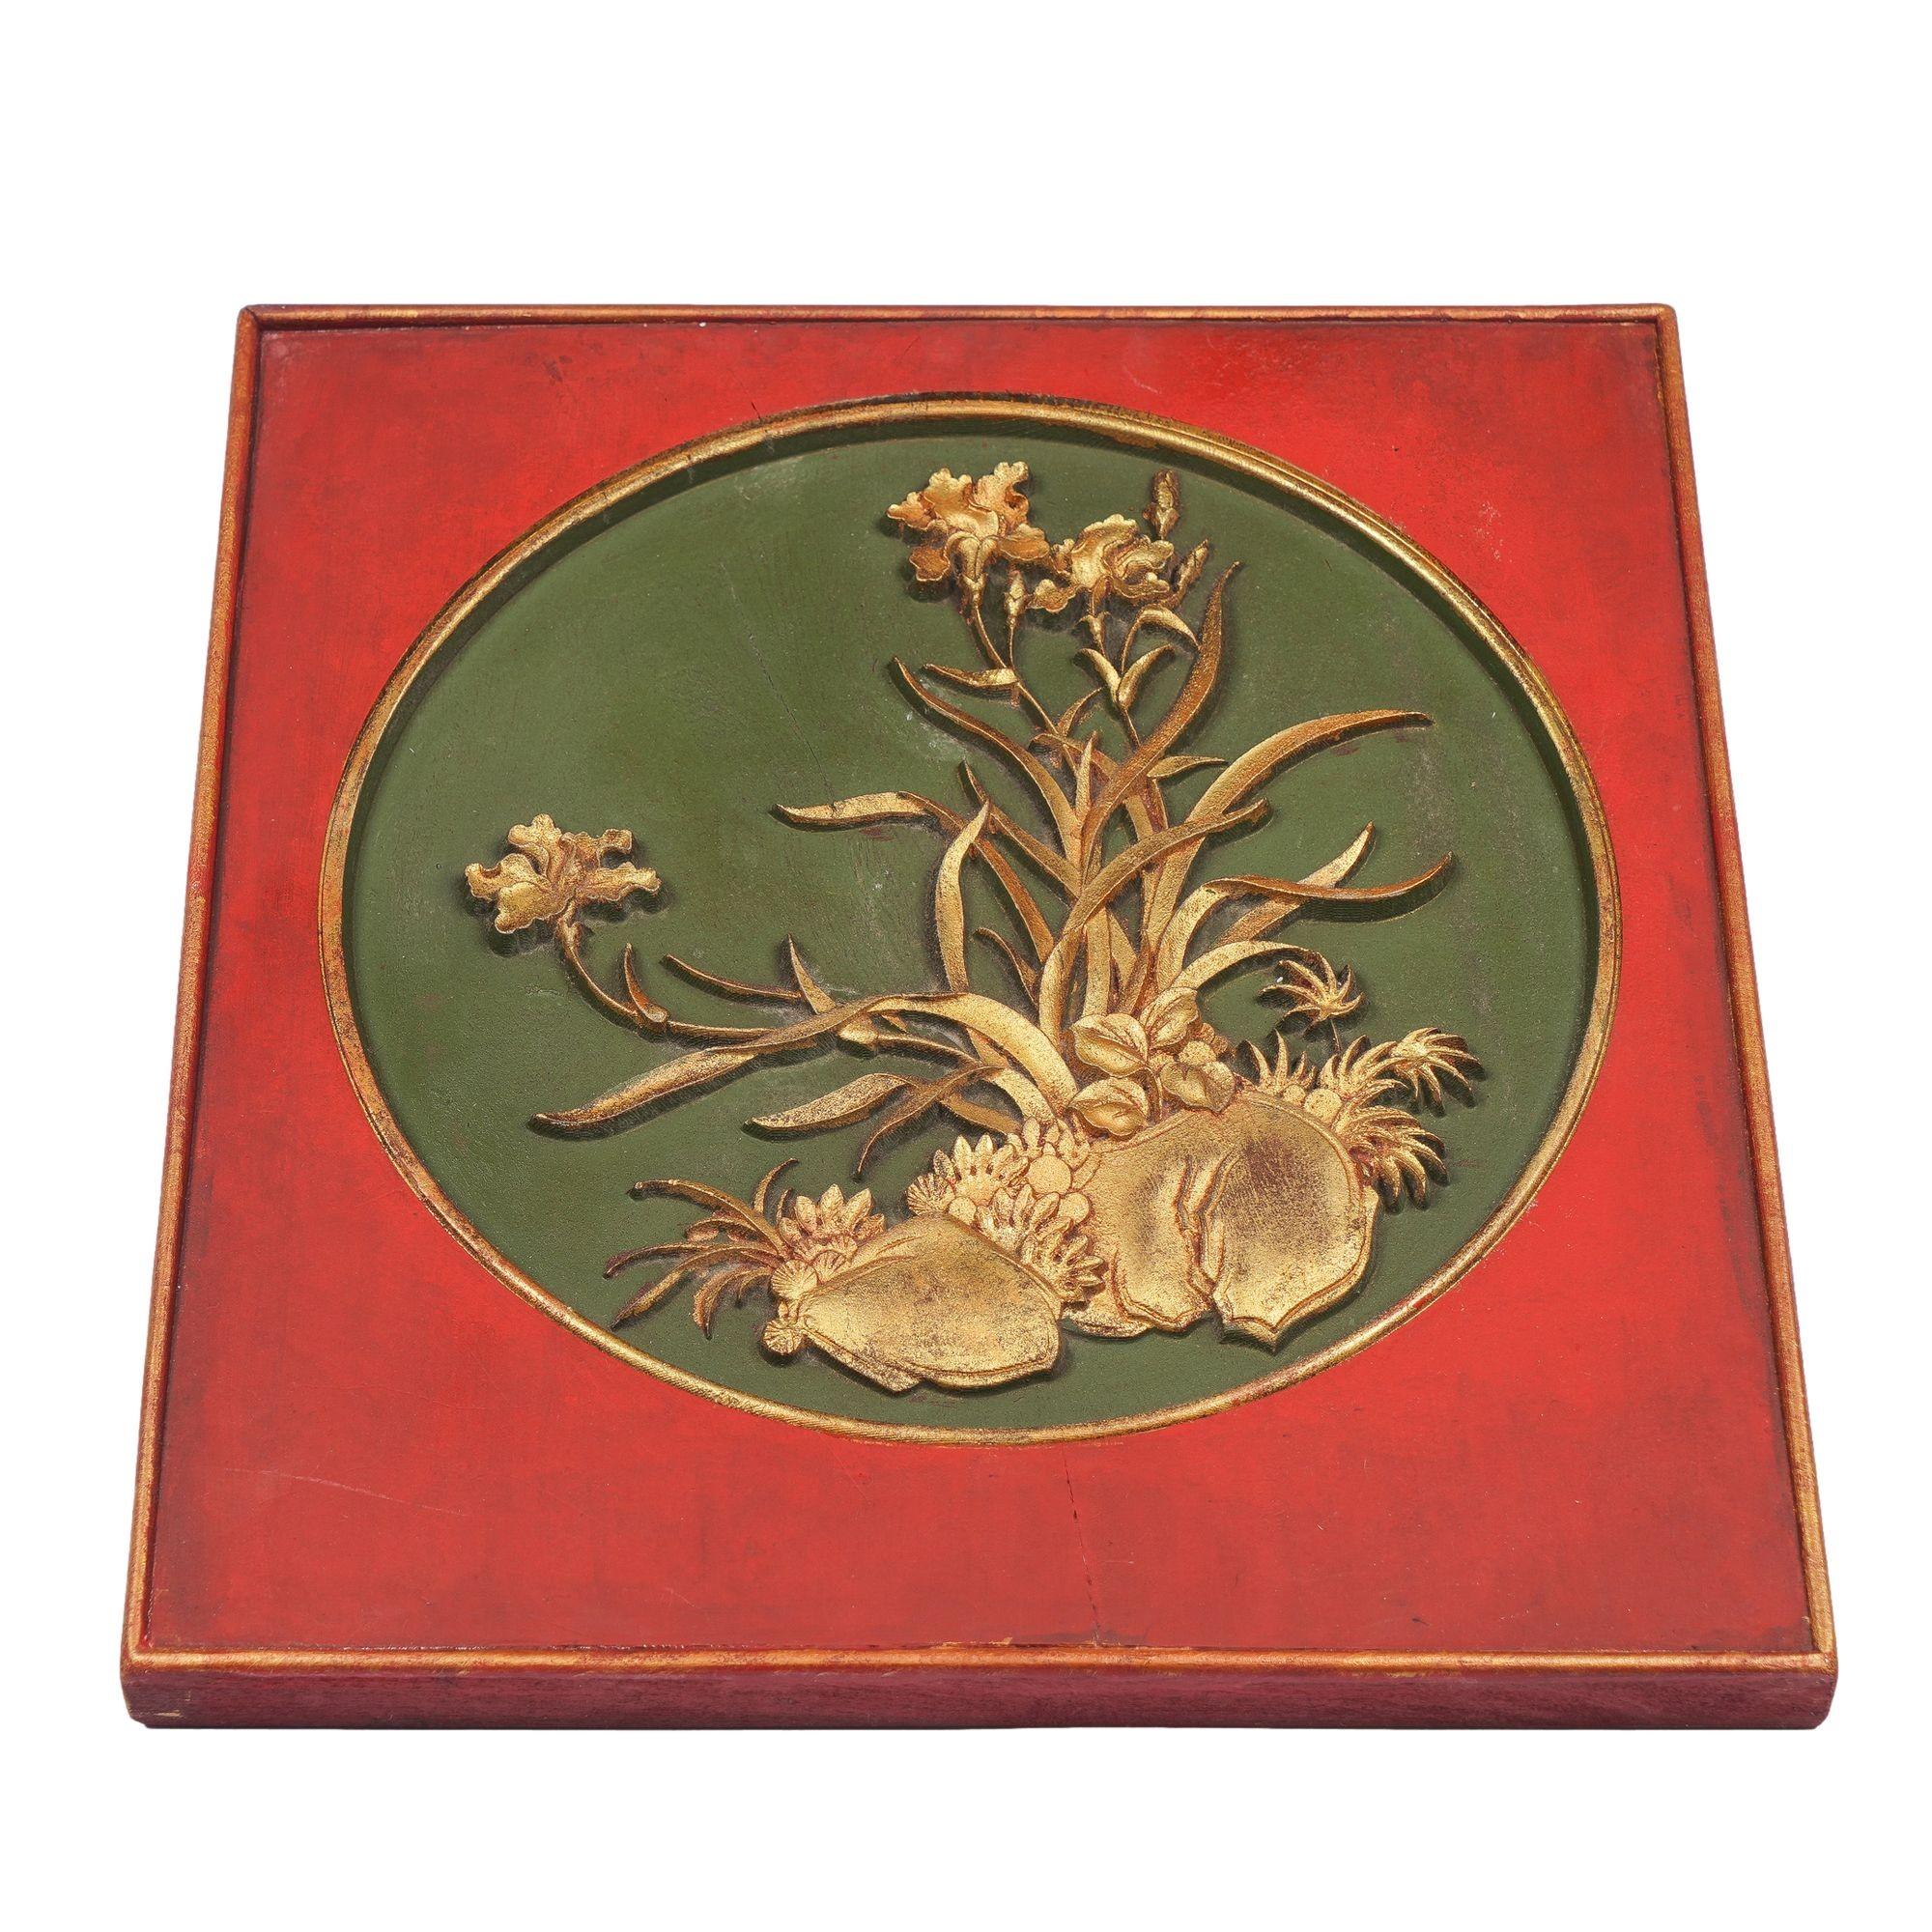 Rot lackierte quadratische Holztafel mit kreisförmigem Einsatz mit flacher geschnitzter vergoldeter Kartusche auf grünem Grund.
China, Qing-Dynastie, 19. Jahrhundert.